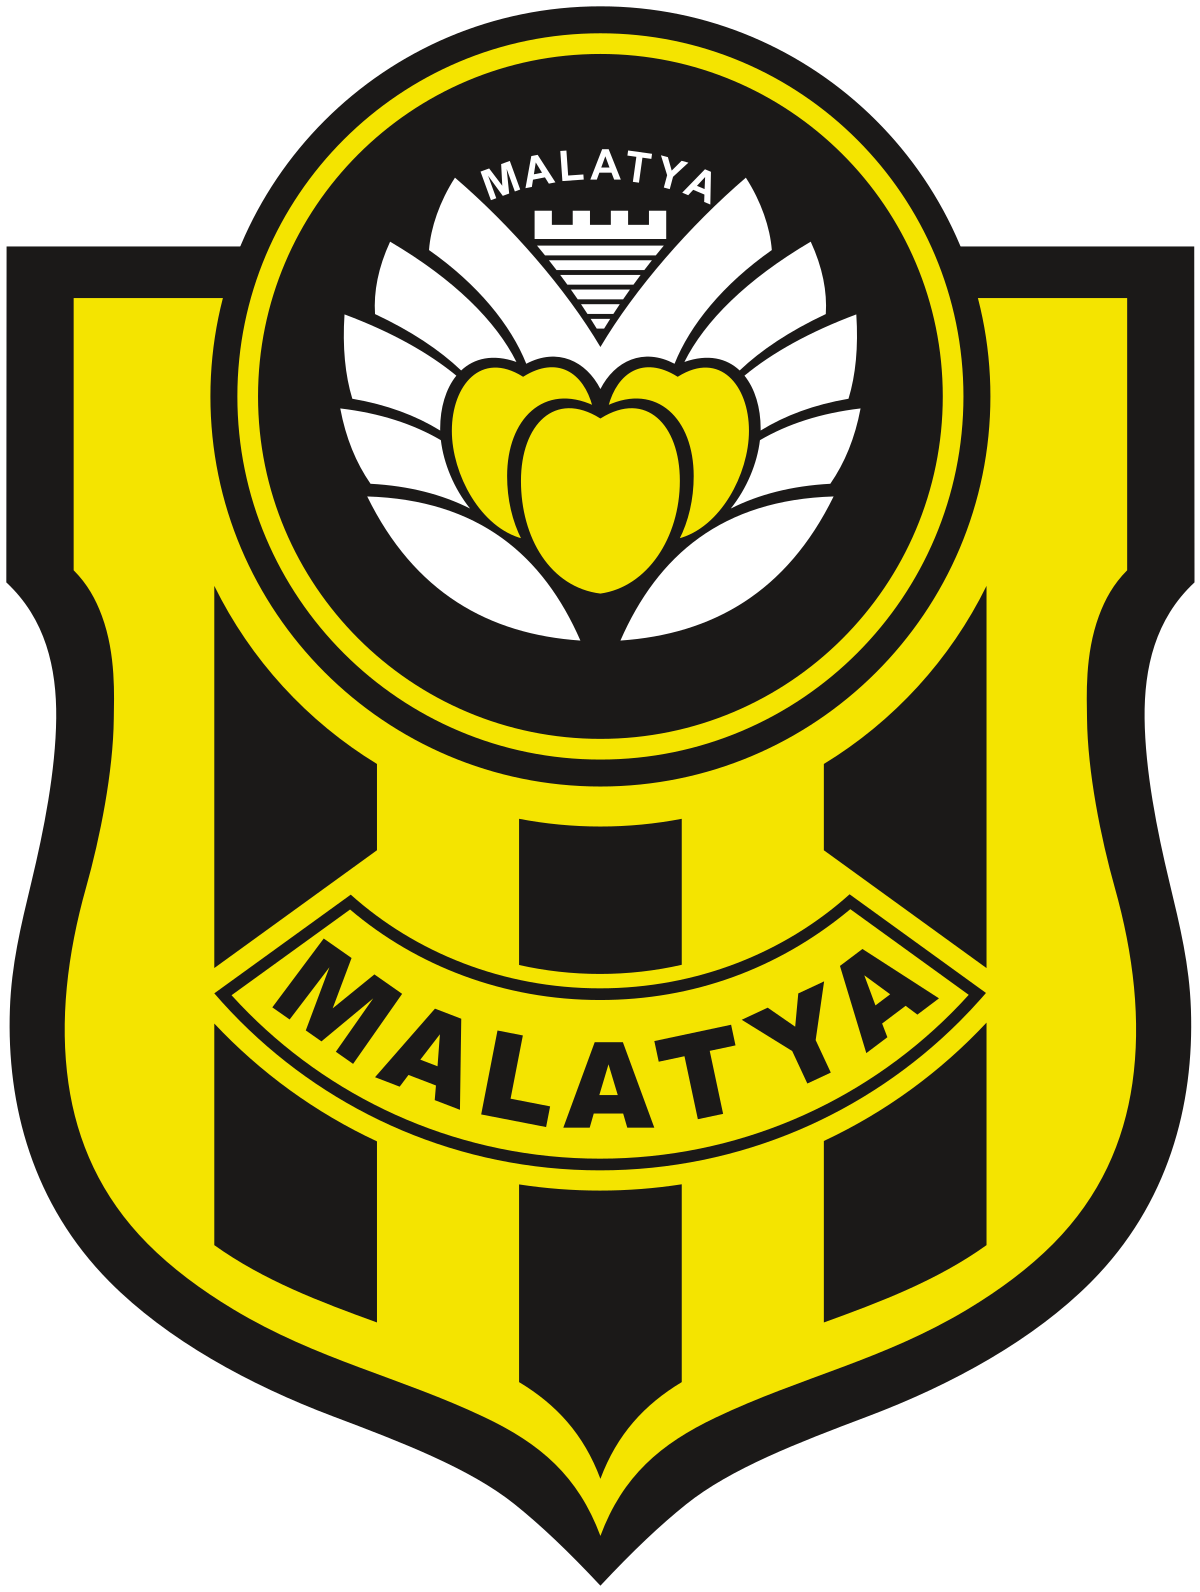 Yeni Malatyaspor U19